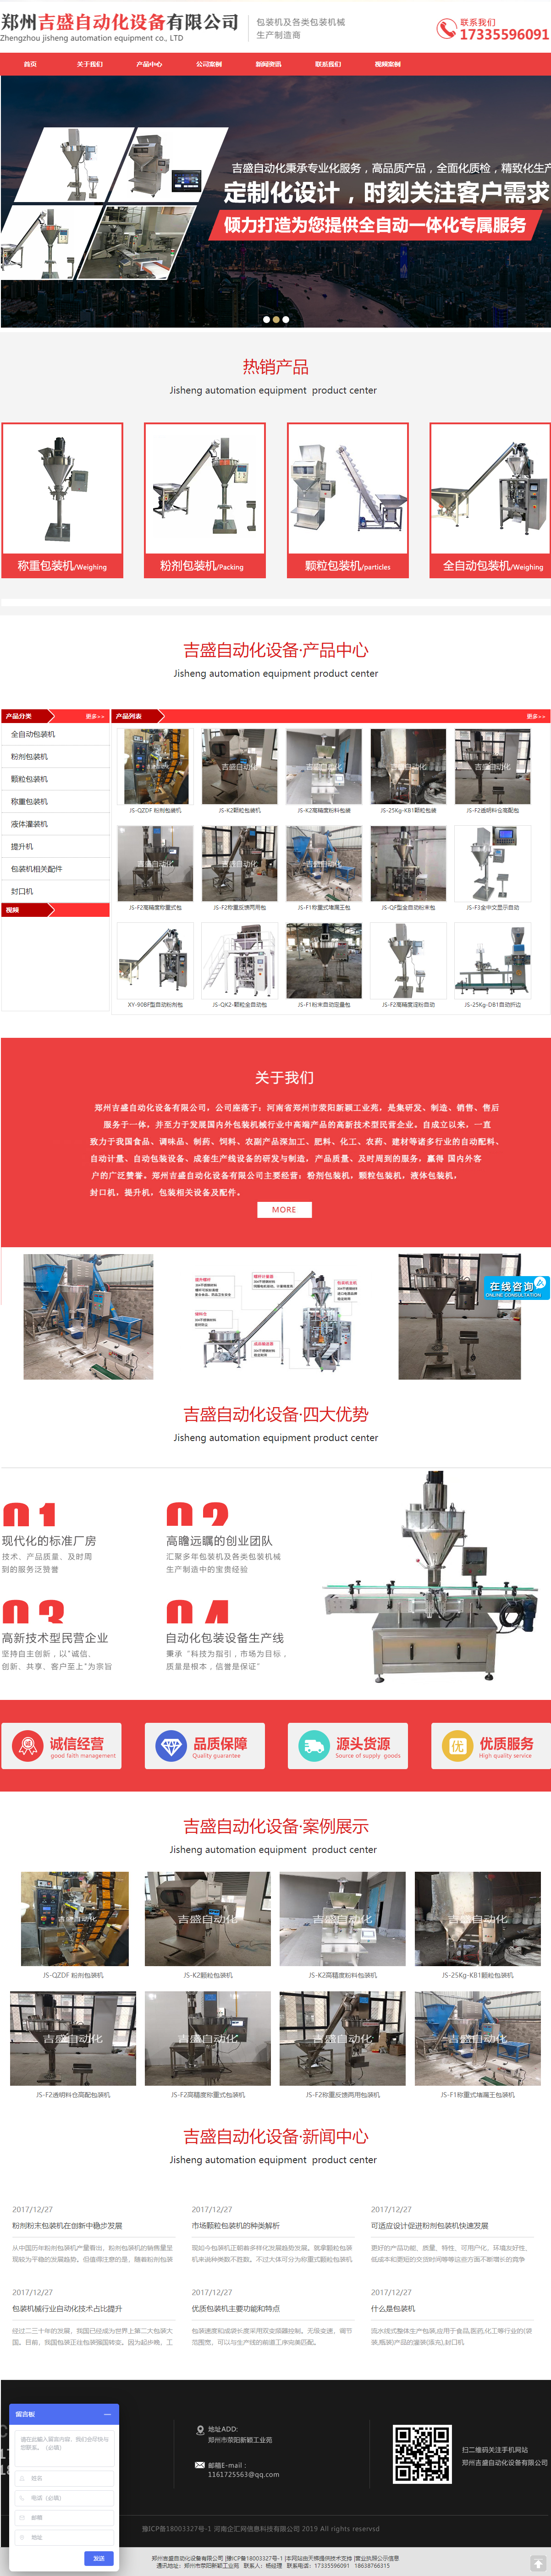 郑州吉盛自动化设备有限公司网站案例